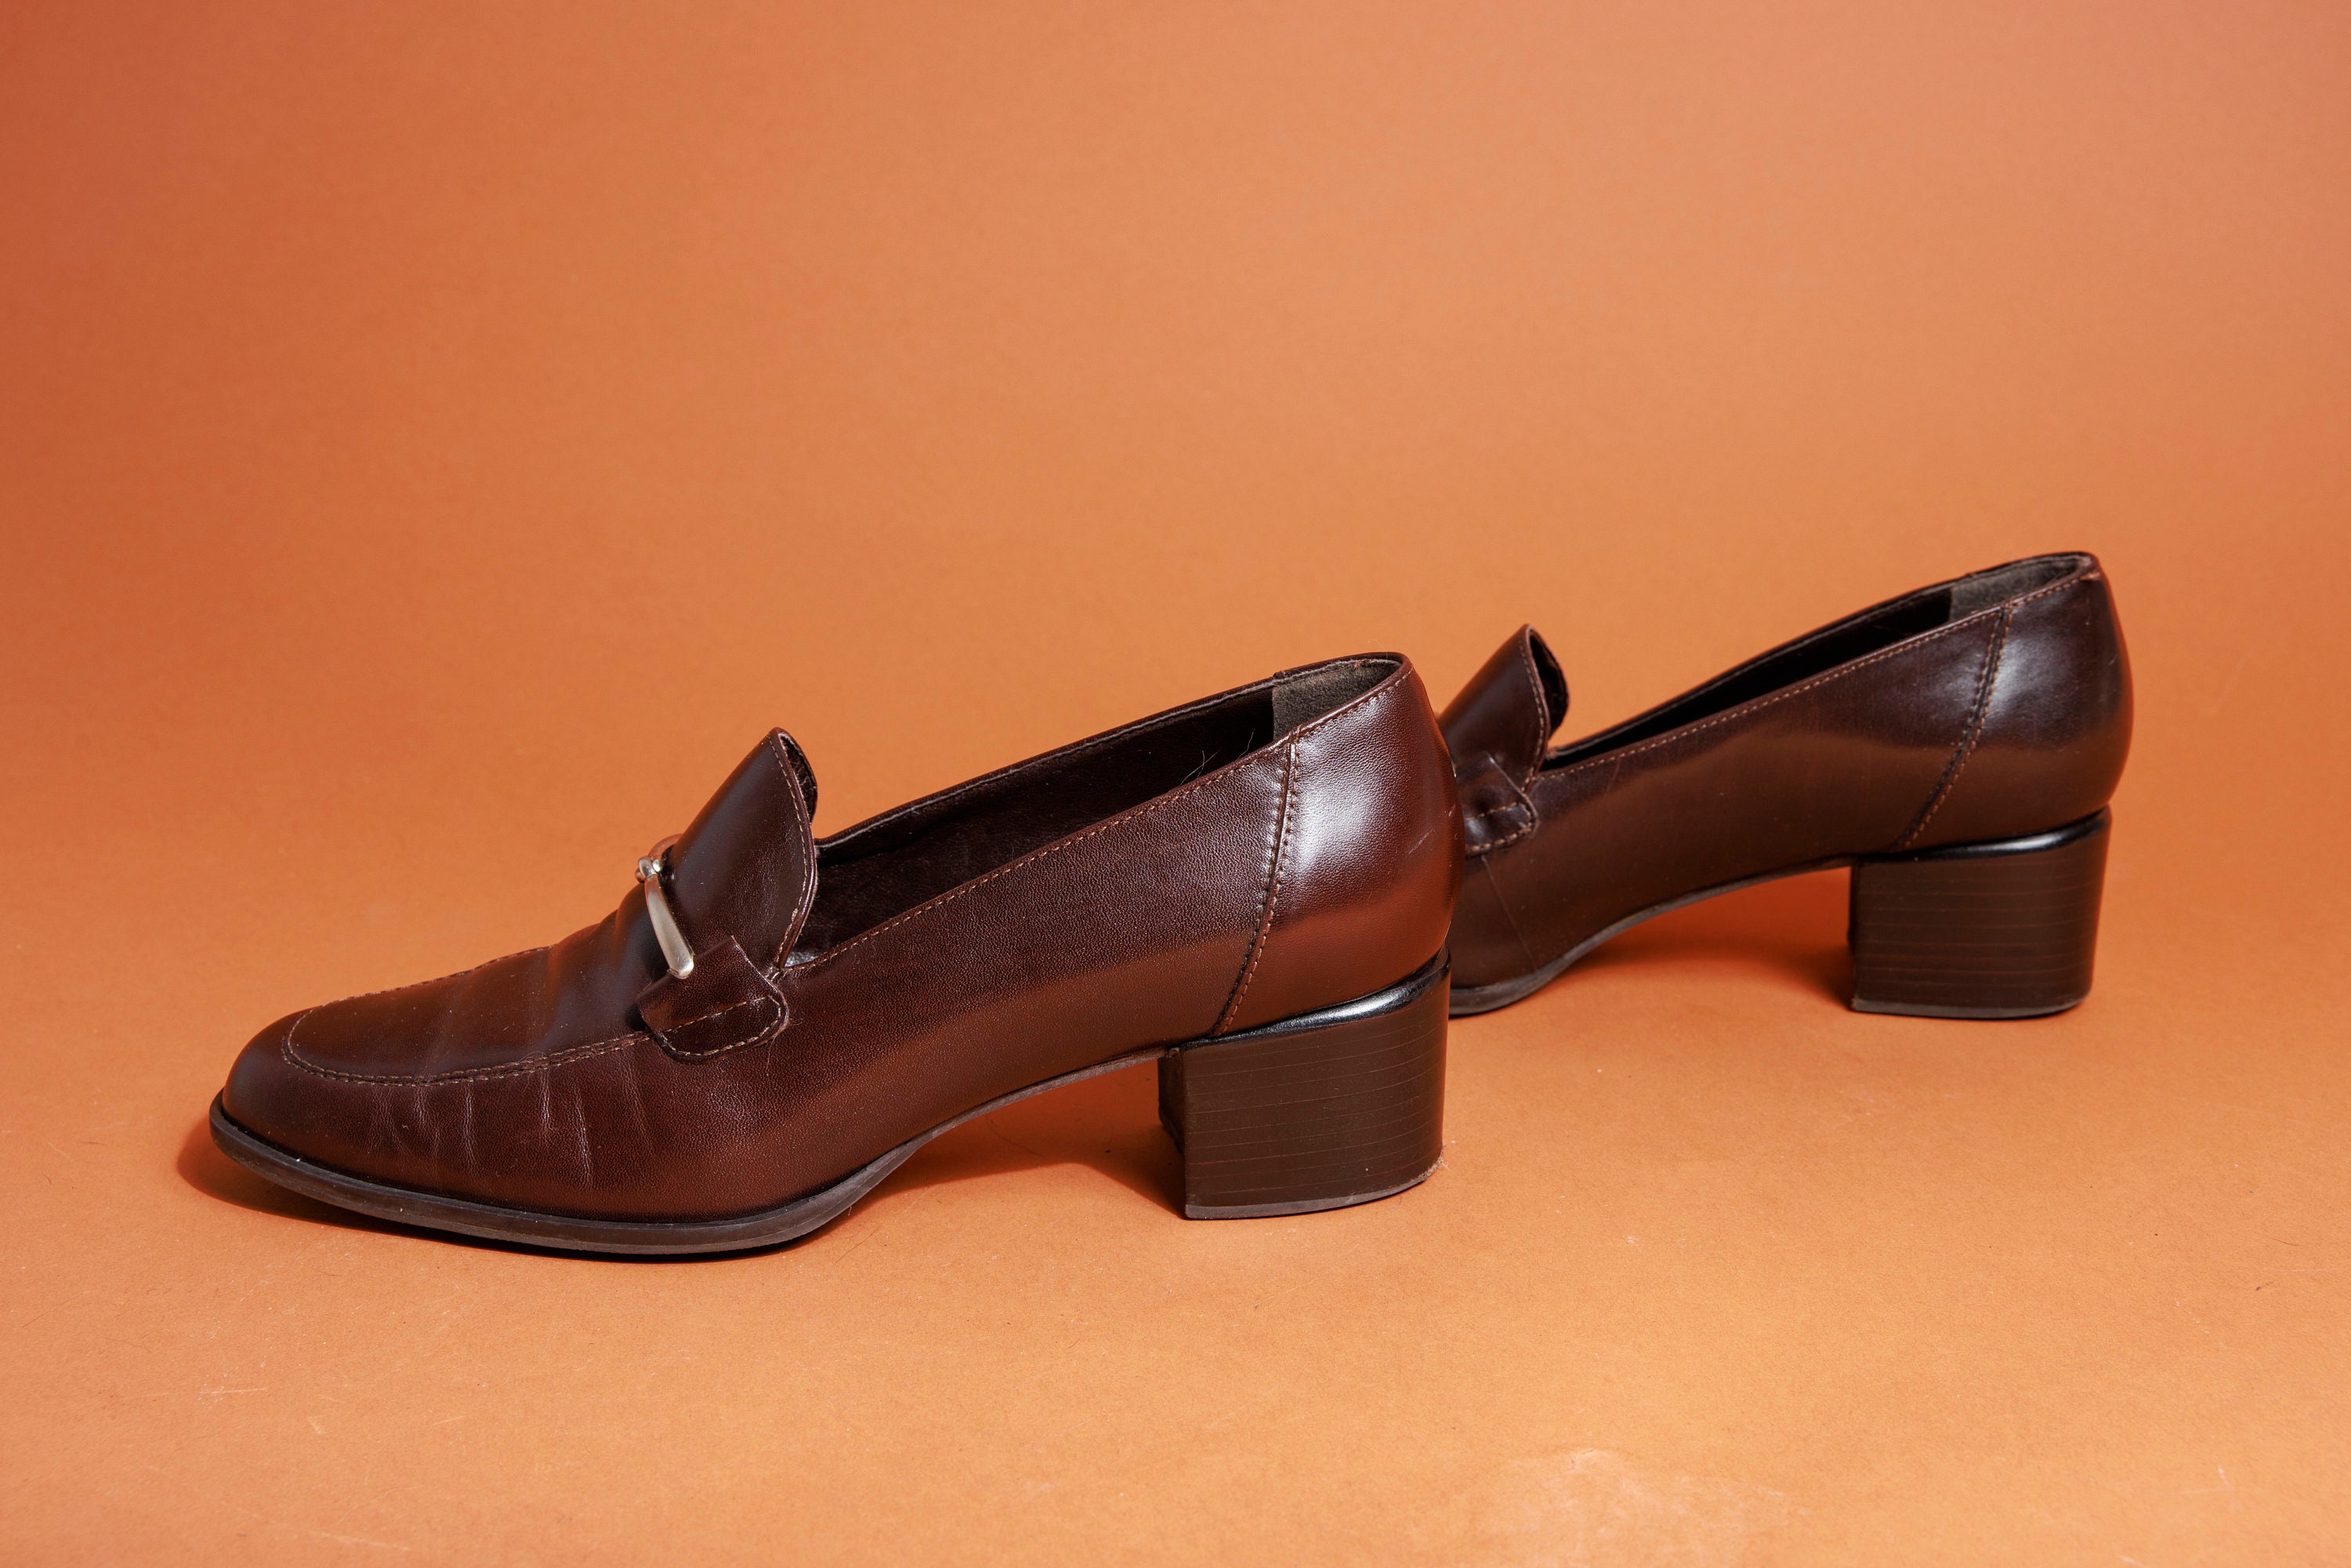 H&M Loafers Black, Size 37 - Gem